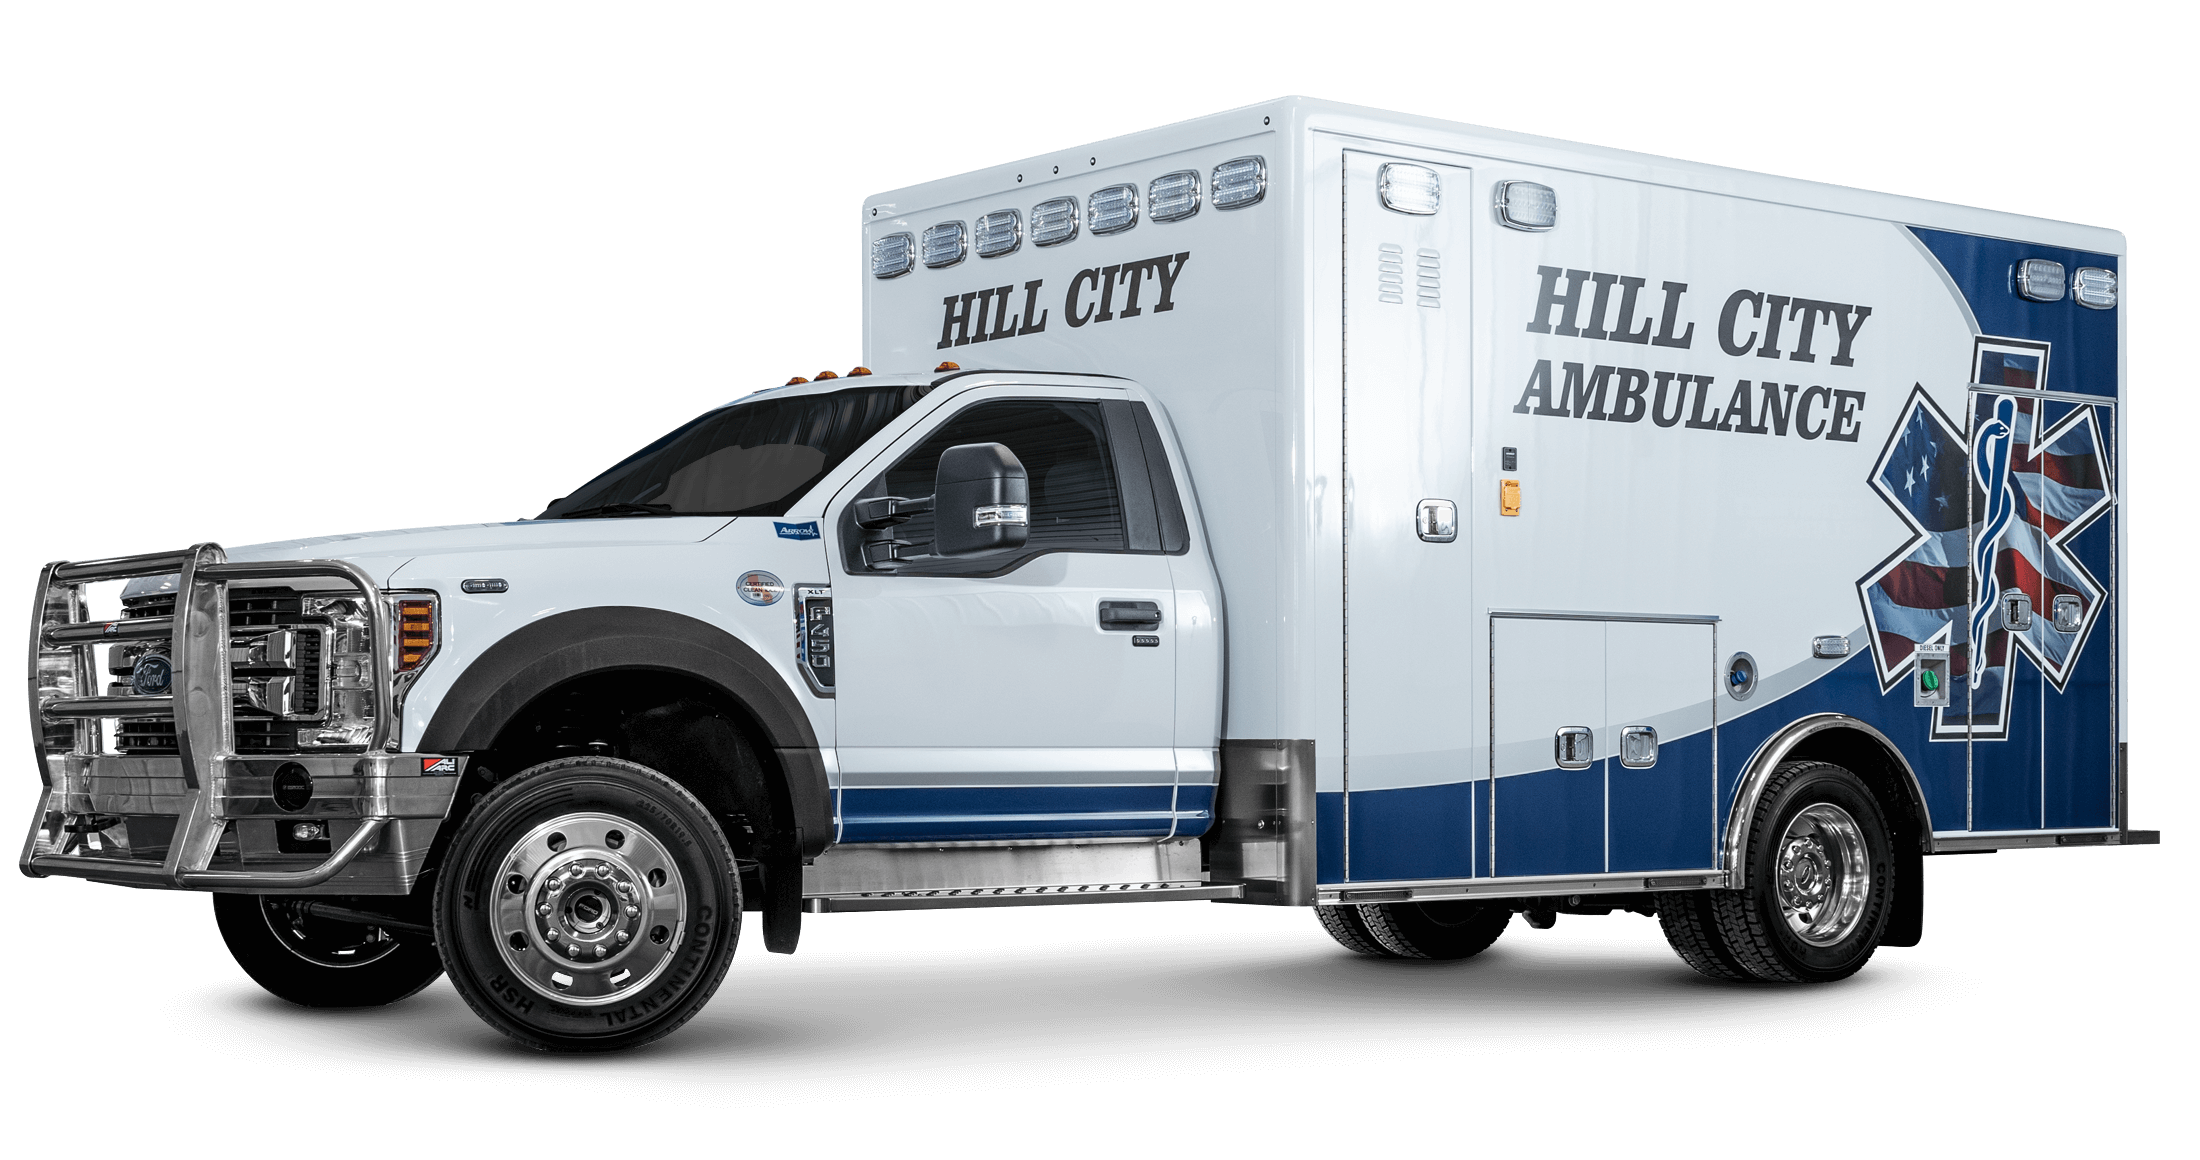 Hill City Ambulance